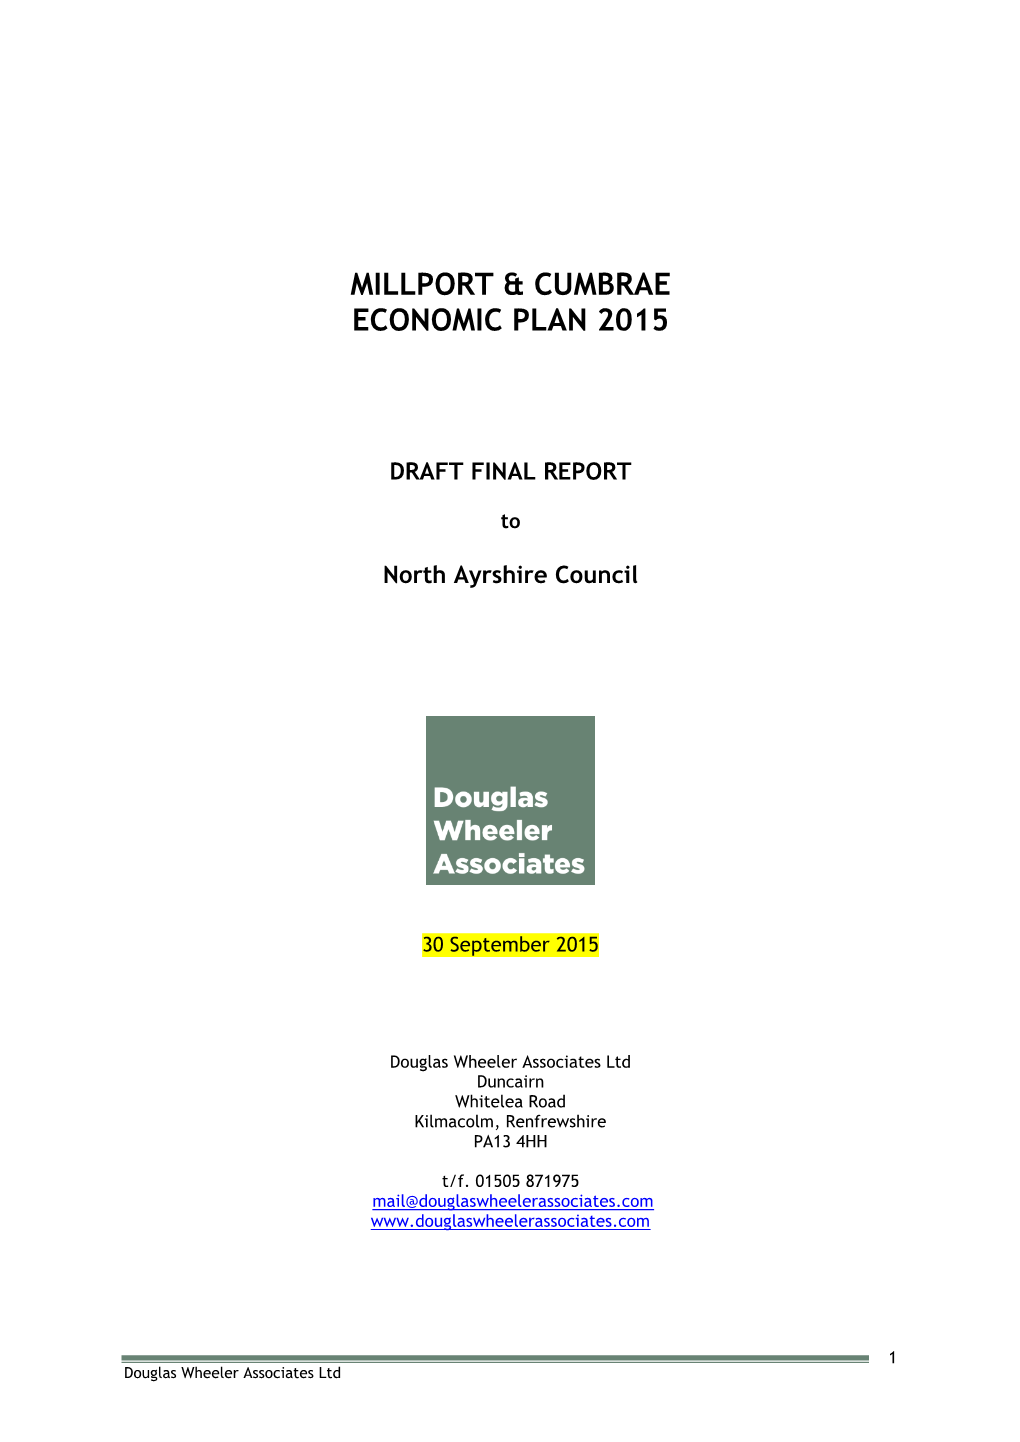 Millport Cumbrae Economic Action Plan